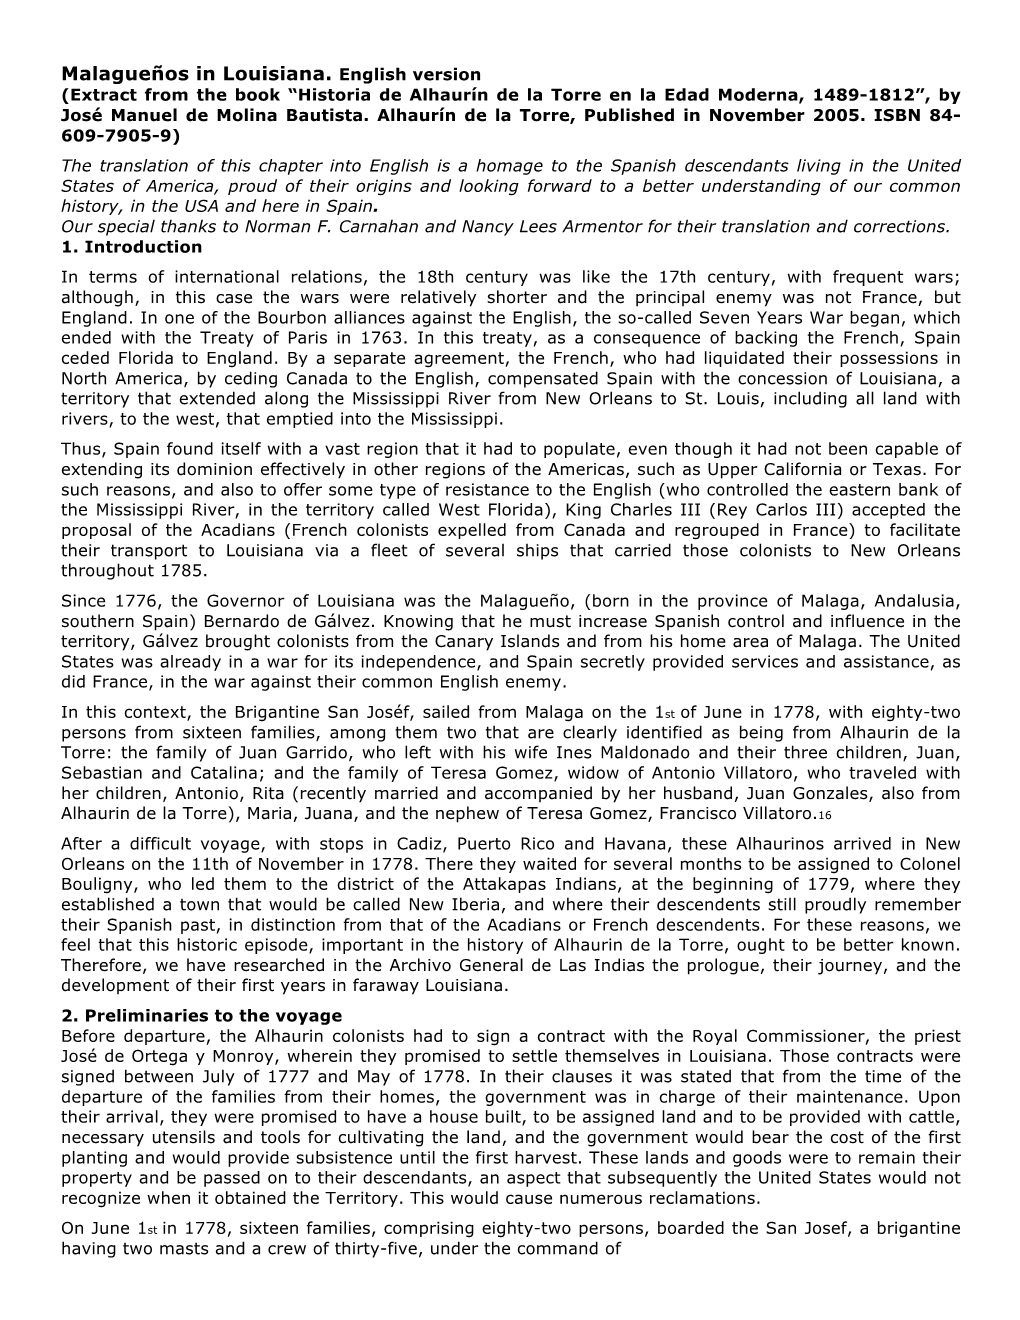 Malagueños in Louisiana. English Version (Extract from the Book “Historia De Alhaurín De La Torre En La Edad Moderna, 1489-1812”, by José Manuel De Molina Bautista